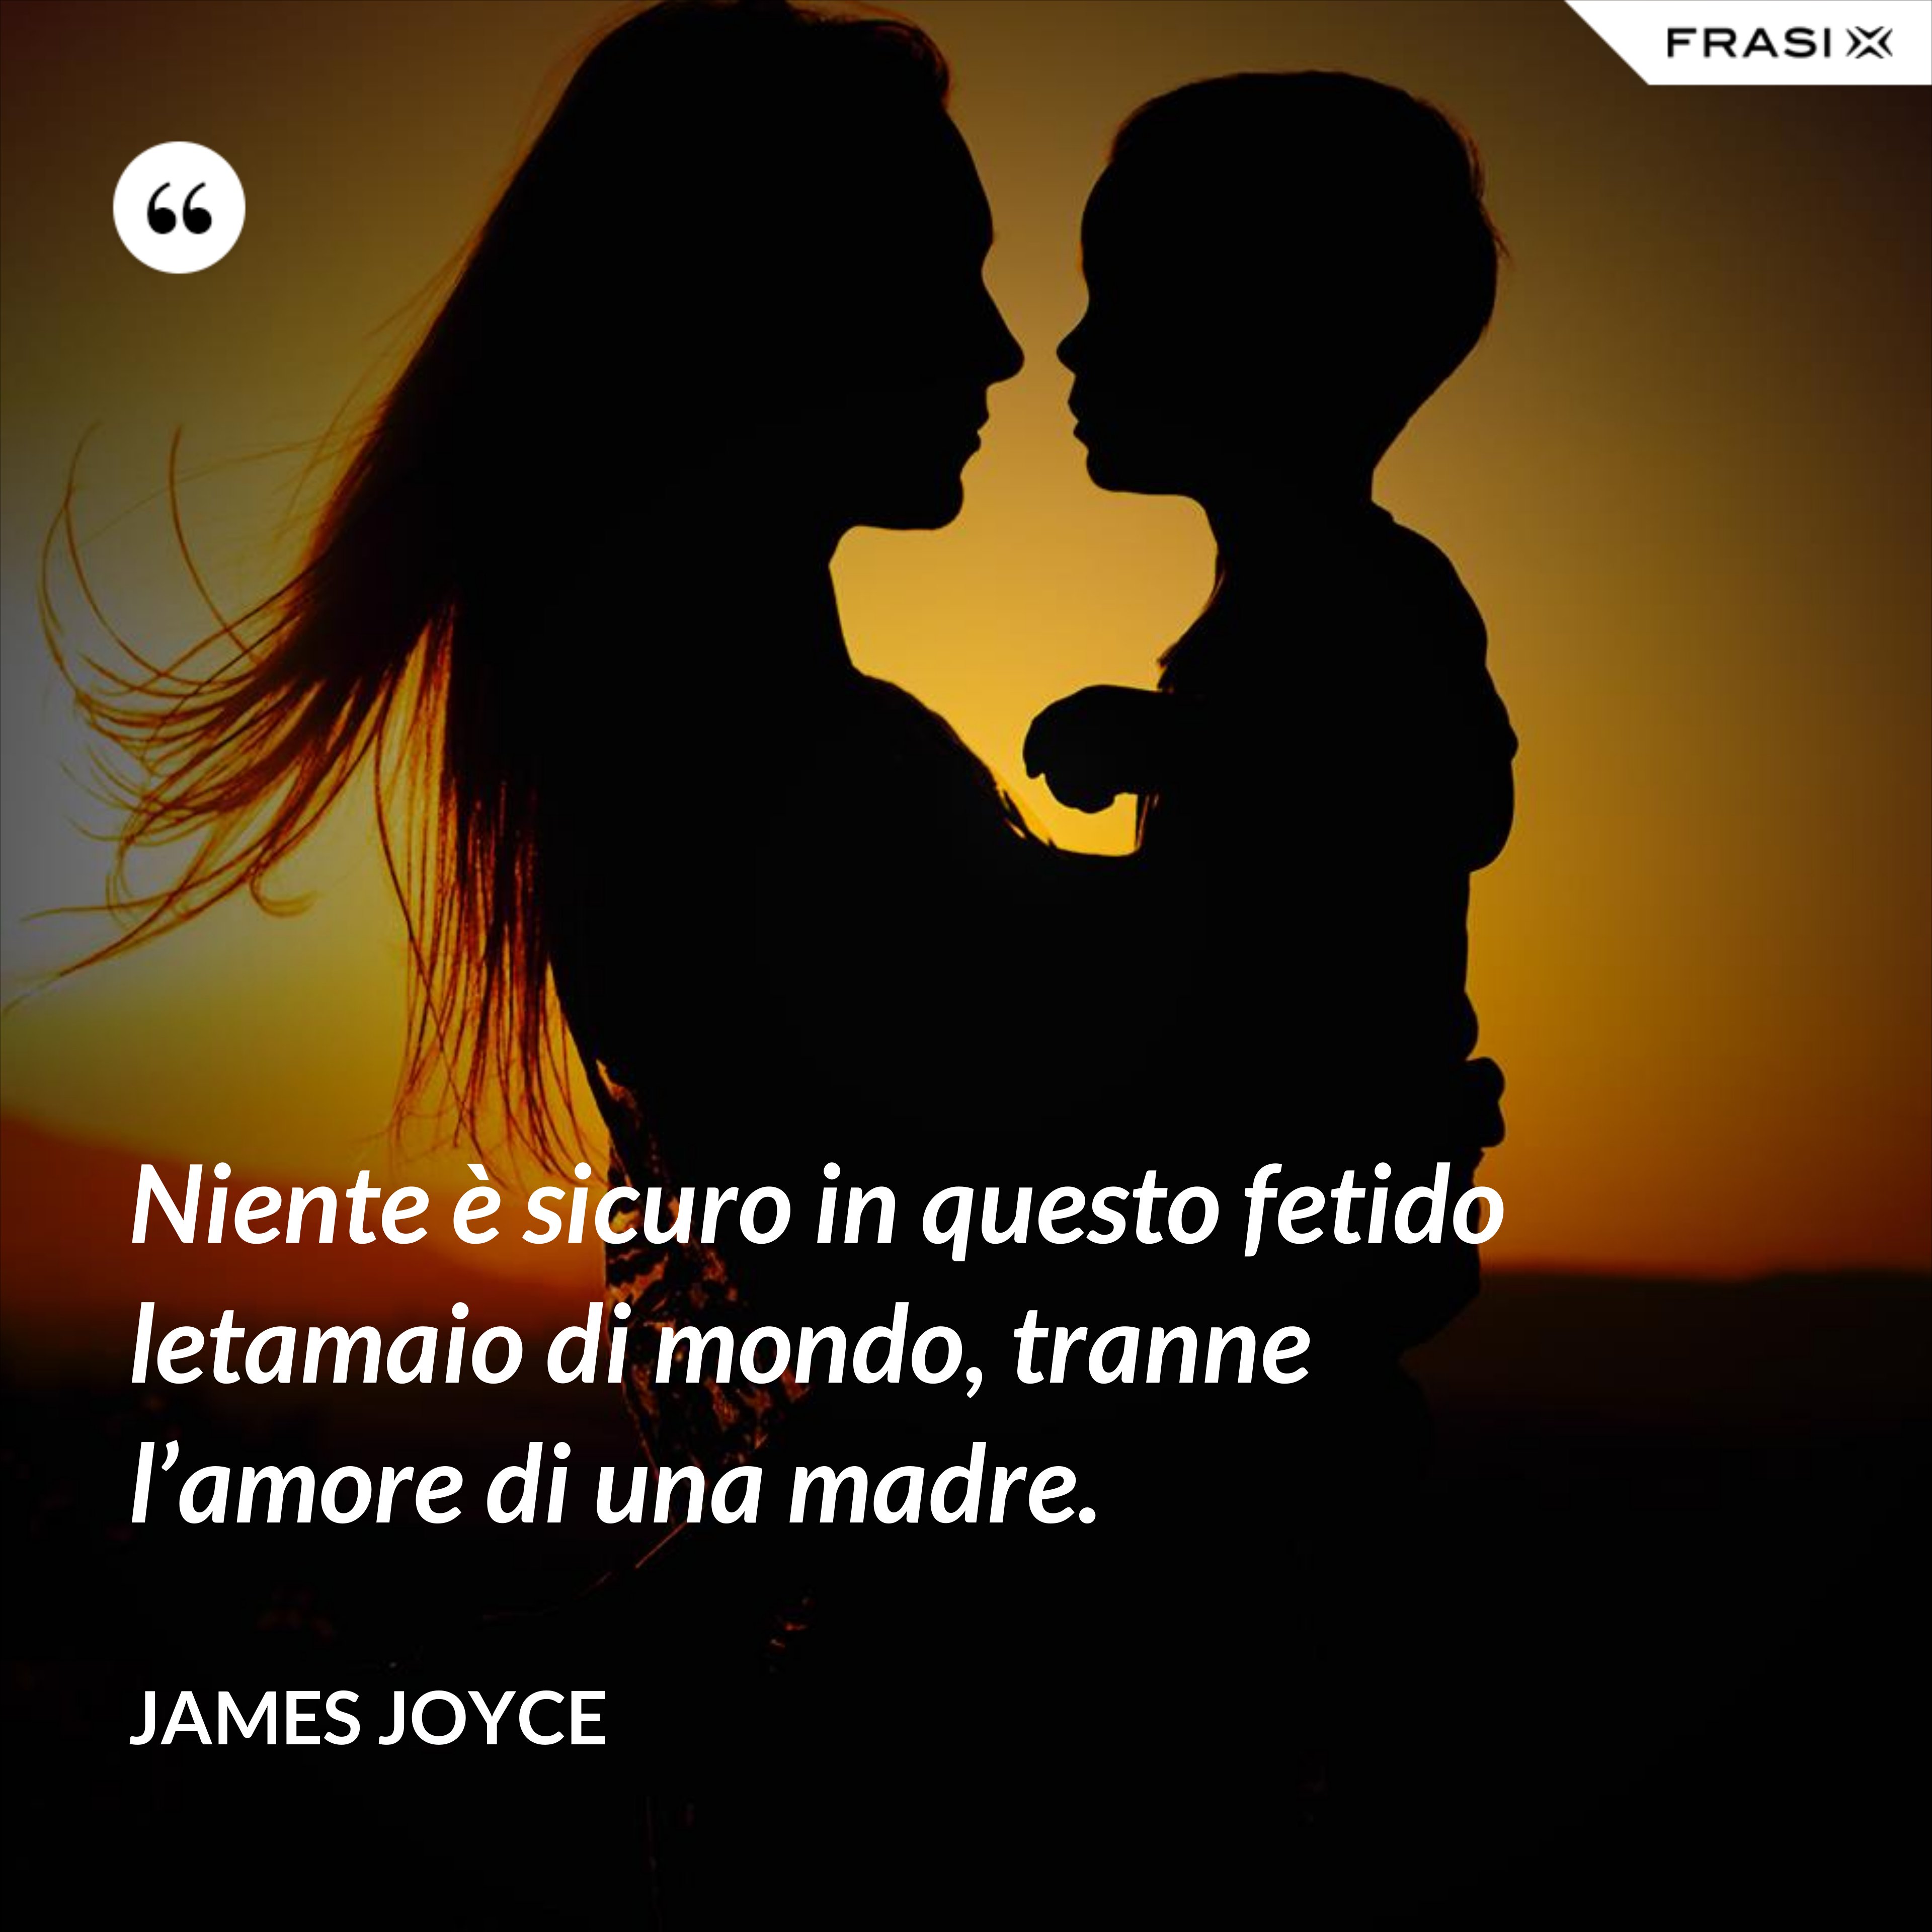 Niente è sicuro in questo fetido letamaio di mondo, tranne l’amore di una madre. - James Joyce